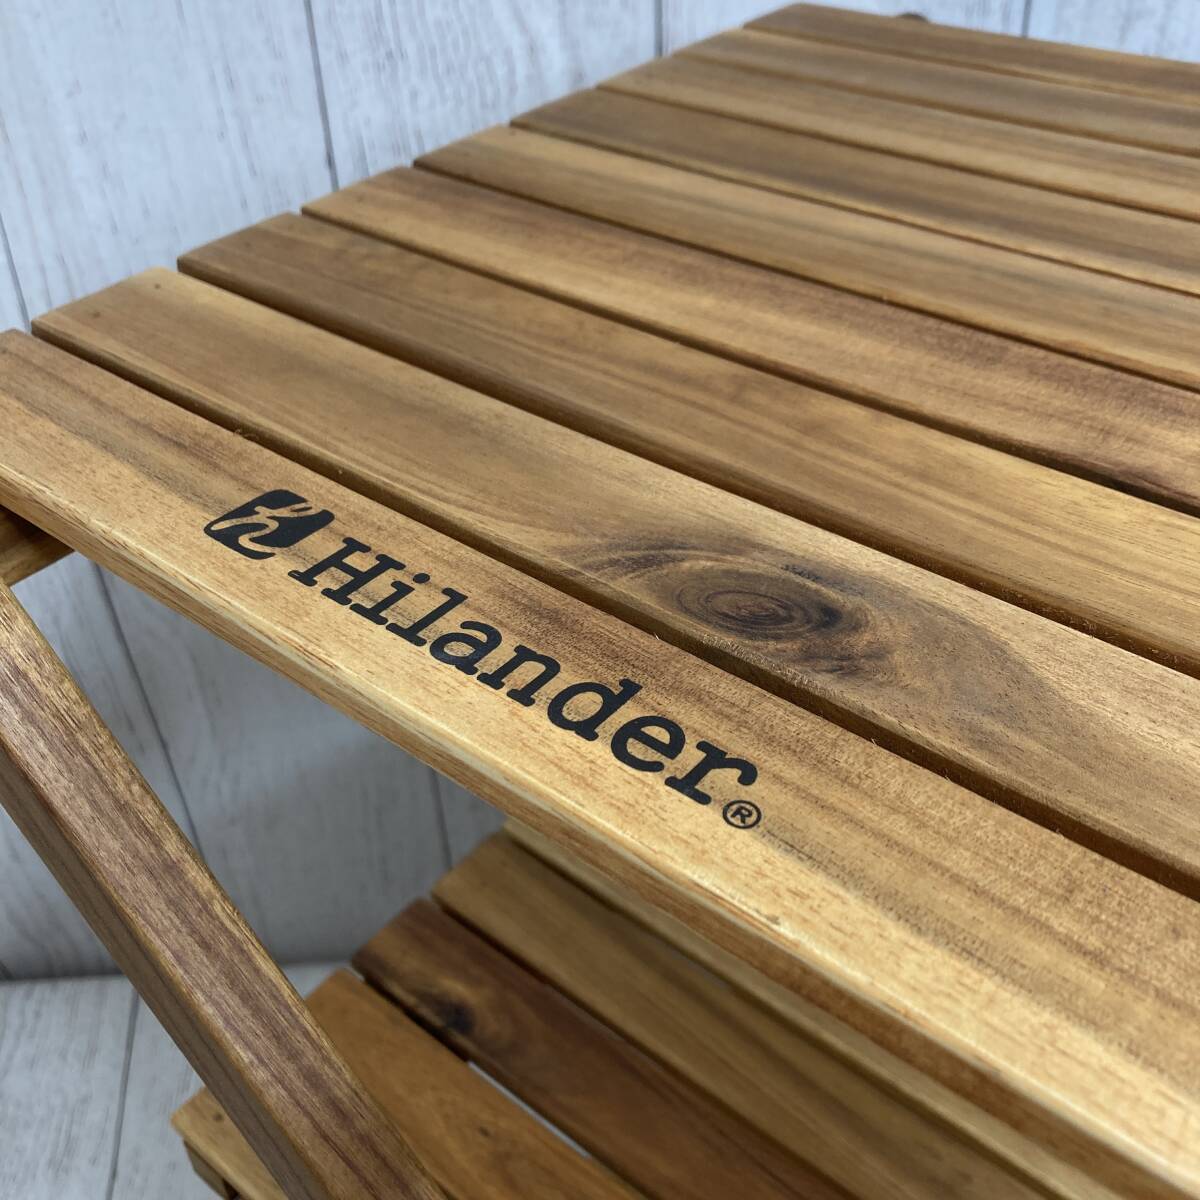 【新品未開封】Hilander(ハイランダー) ウッドラック 3段 専用ケース付き 木製ラック 425 HCTT-001 /Y20293-V3_画像5